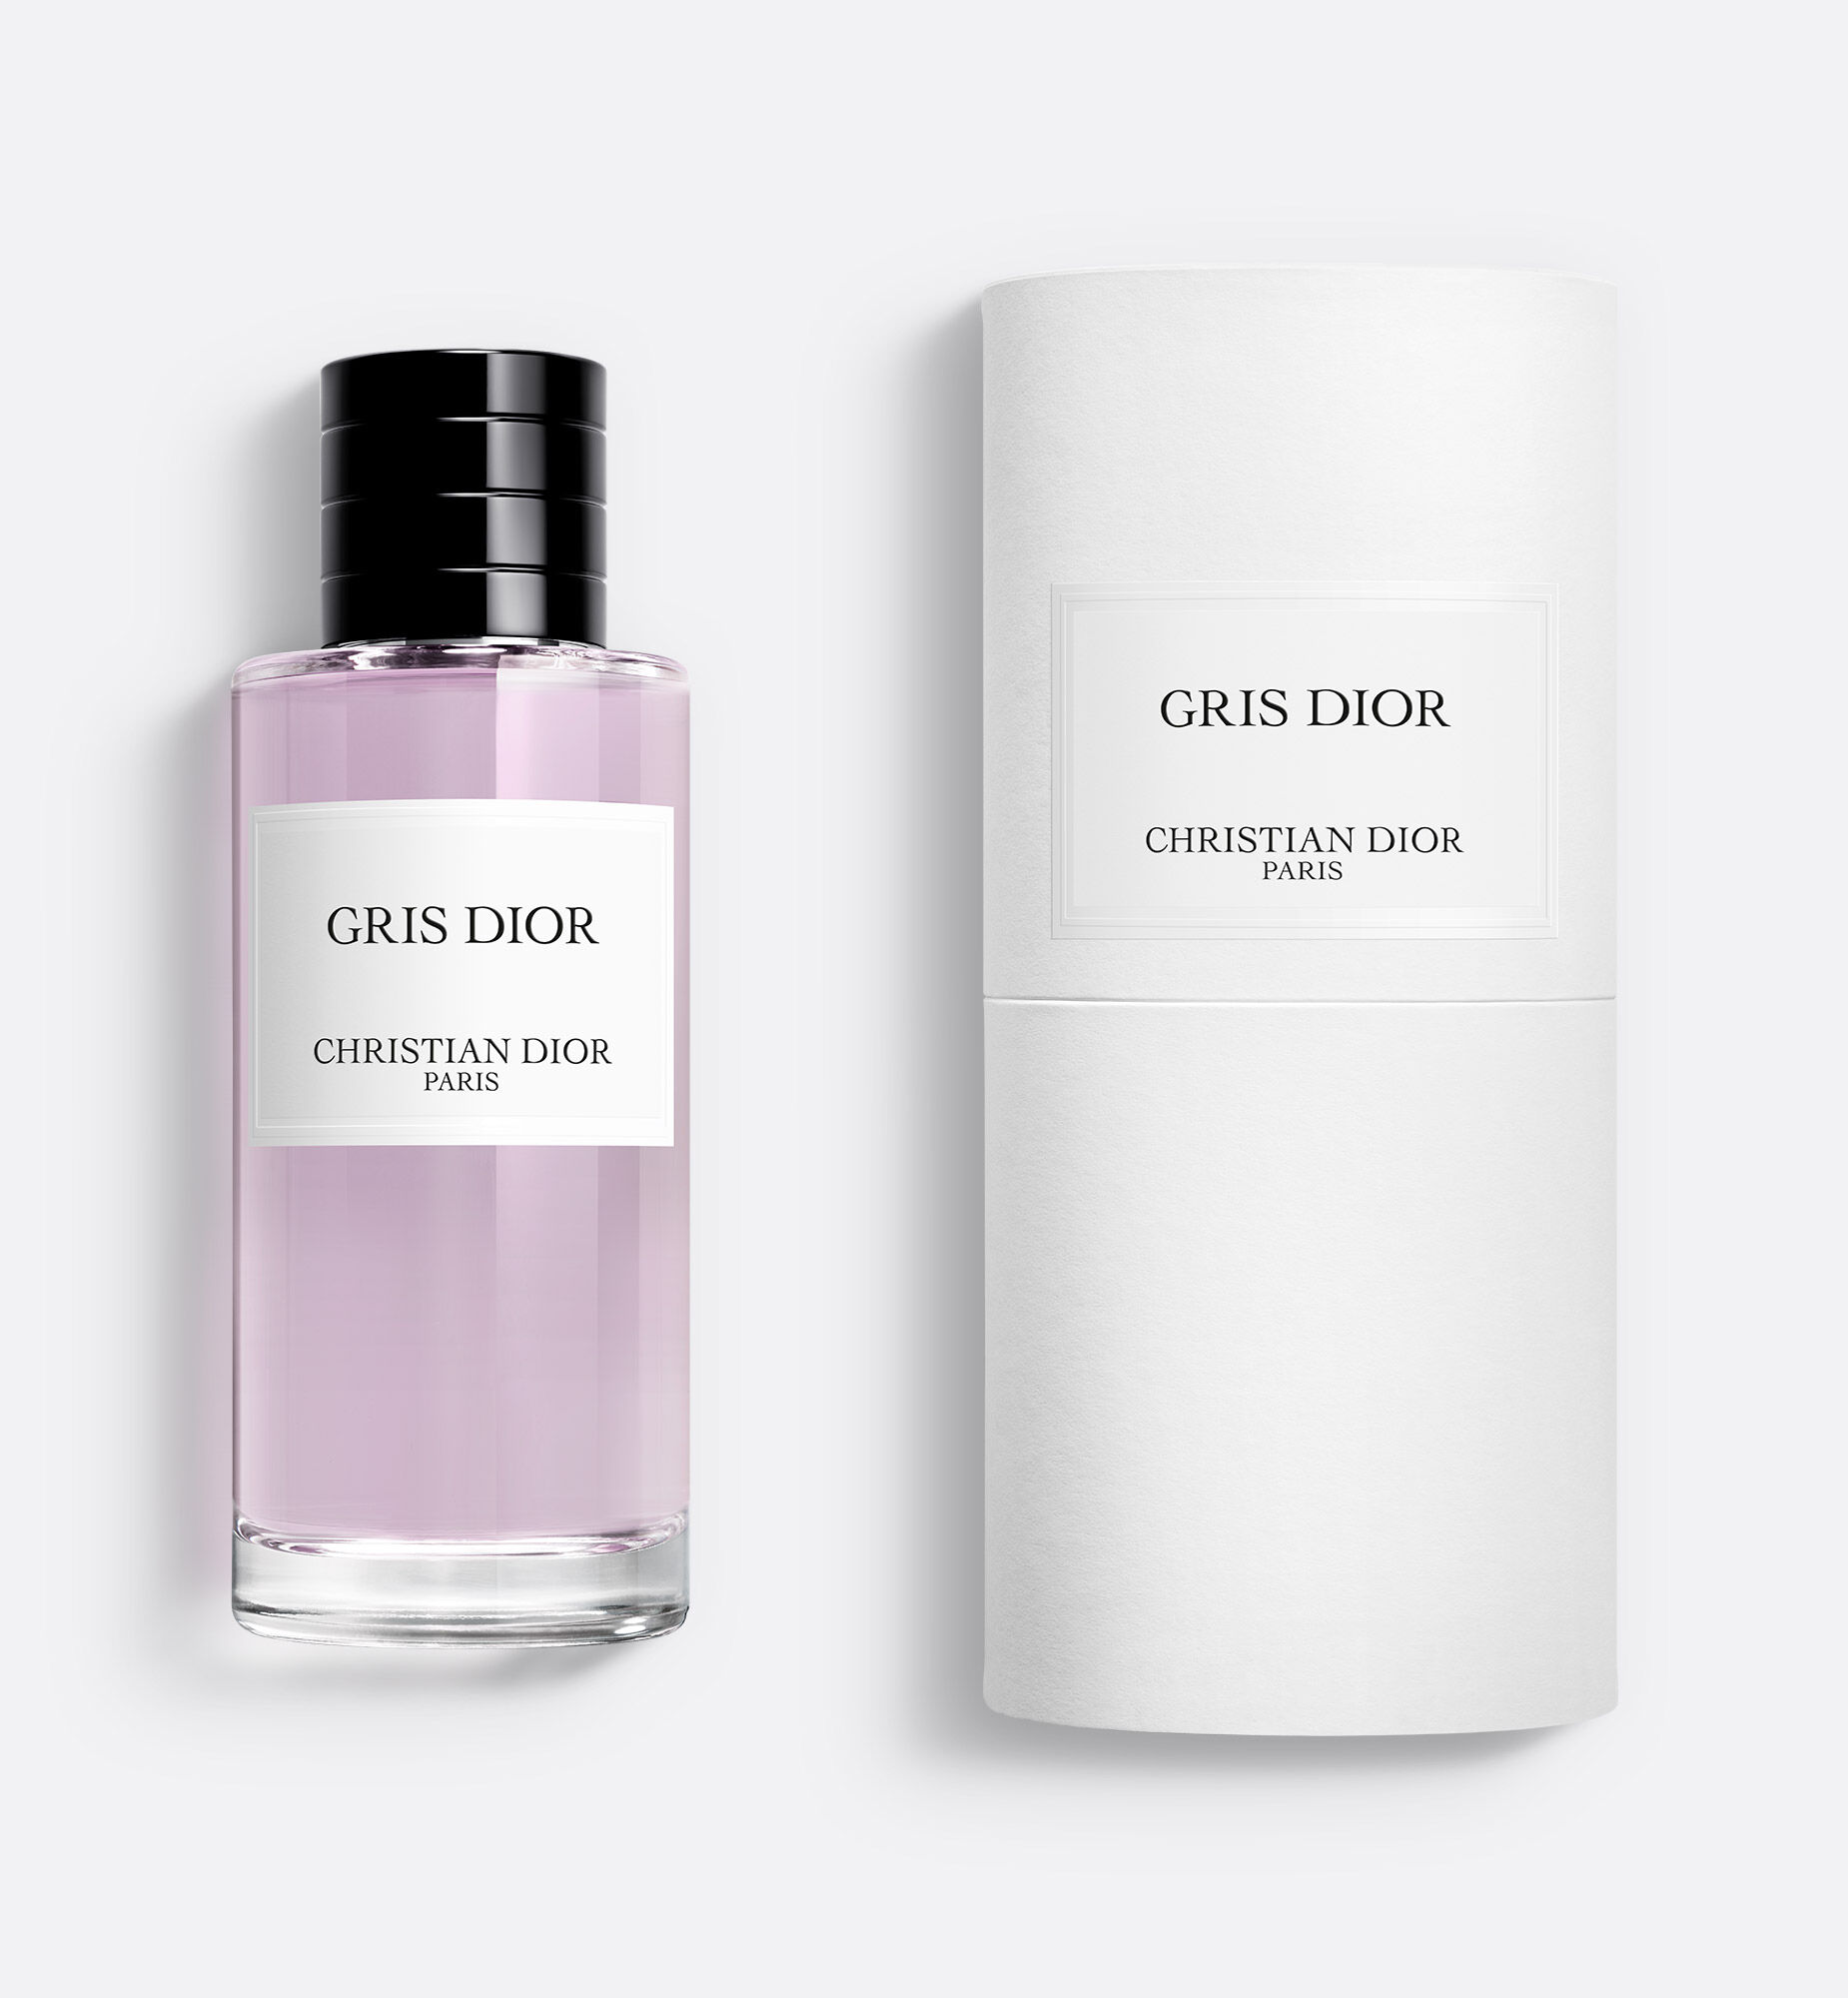 GRIS DIOR  Fragrance  Dior Beauty Online Boutique Singapore